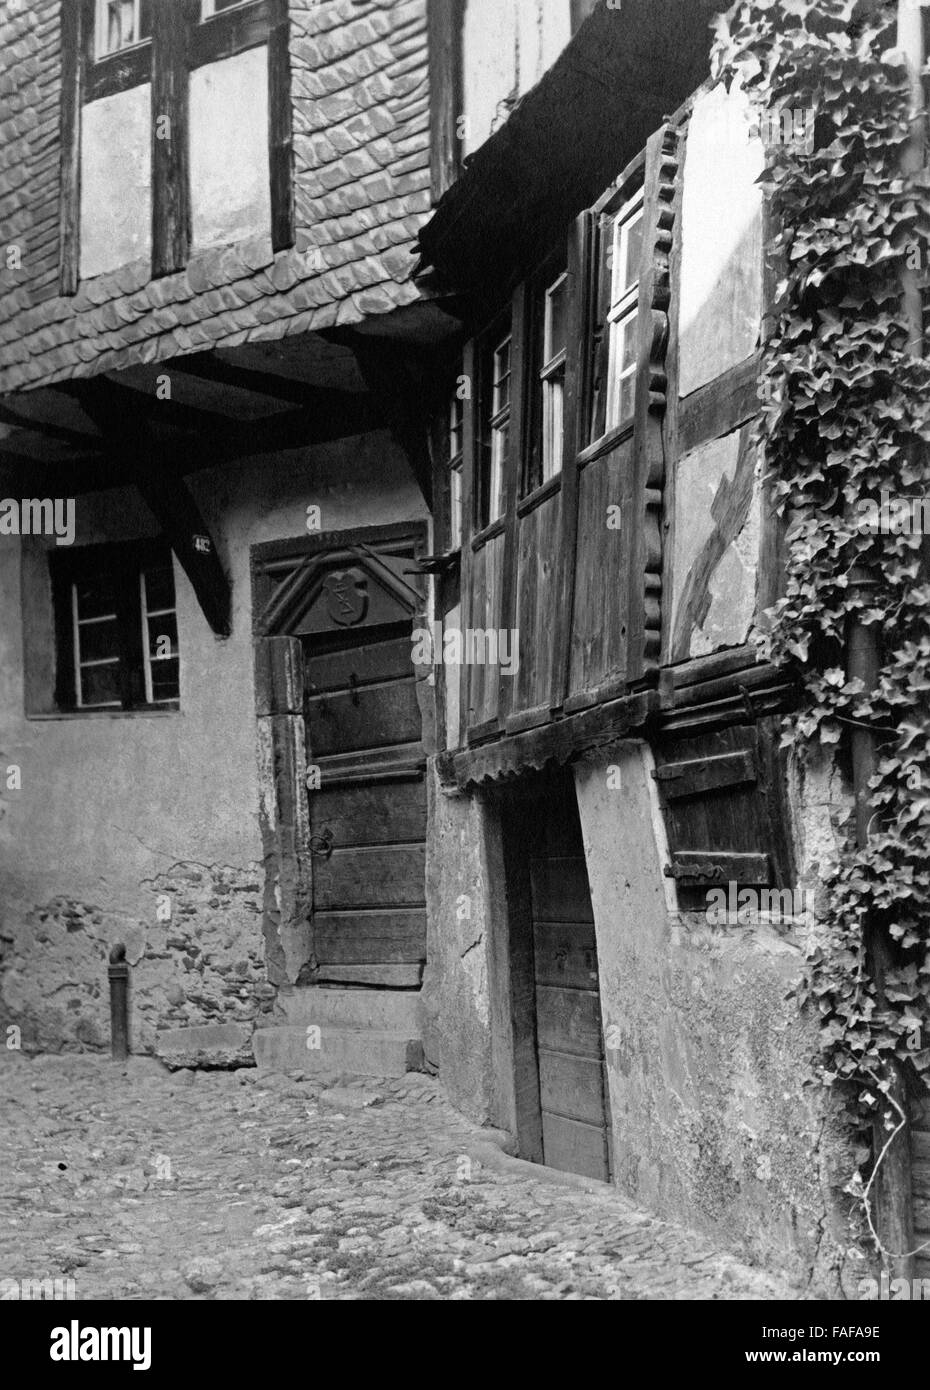 Das Haus Nr. 482 in der Ortschaft Enkirch an der Mosel, Deutschland 1930er Jahre. Casa No. 482 presso la cittadina di Enkirch al fiume Mosella, Germania 1930s. Foto Stock